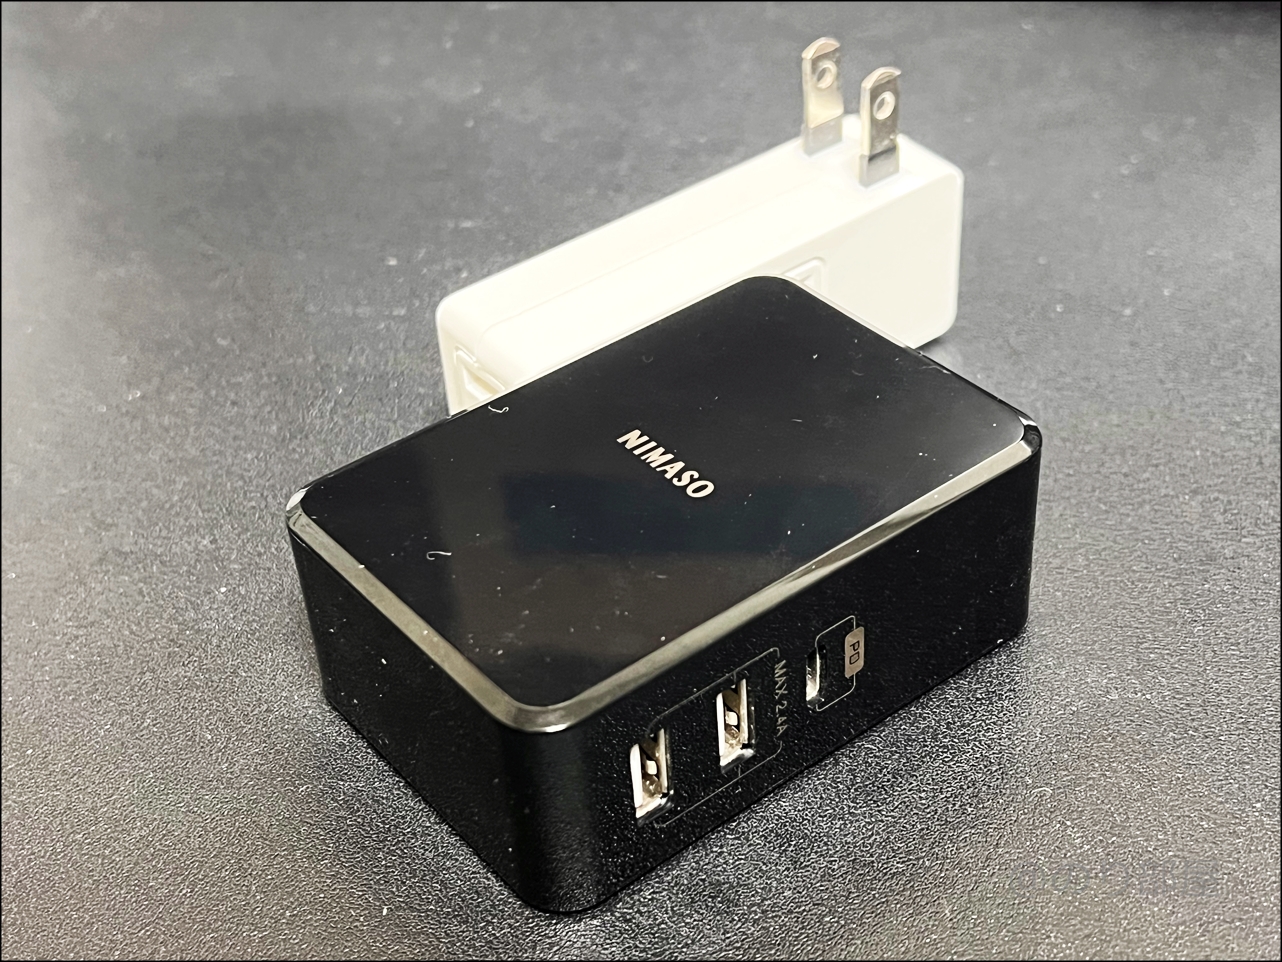 KOVOL USB充電器は電源コードが長いので好きな場所に配置できるのがオススメ！KOVOL USB充電器がスゴイ！スマホ･パソコン超速充電!120W+4個口で便利すぎるUSB-C,USB-A電源タップ！